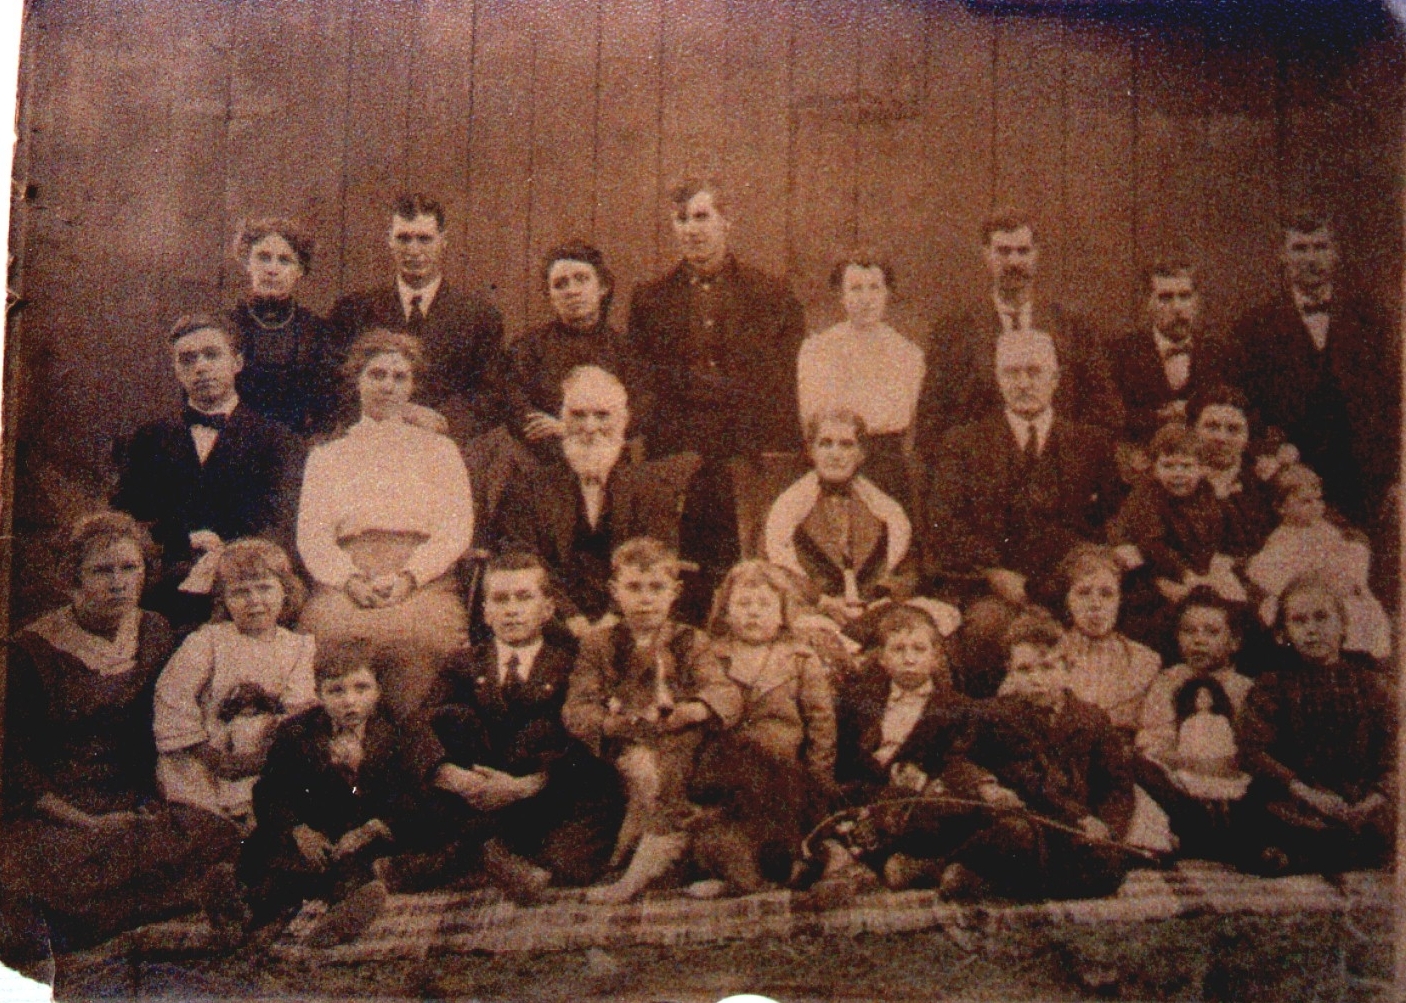 The James P. Barnett Family, KS